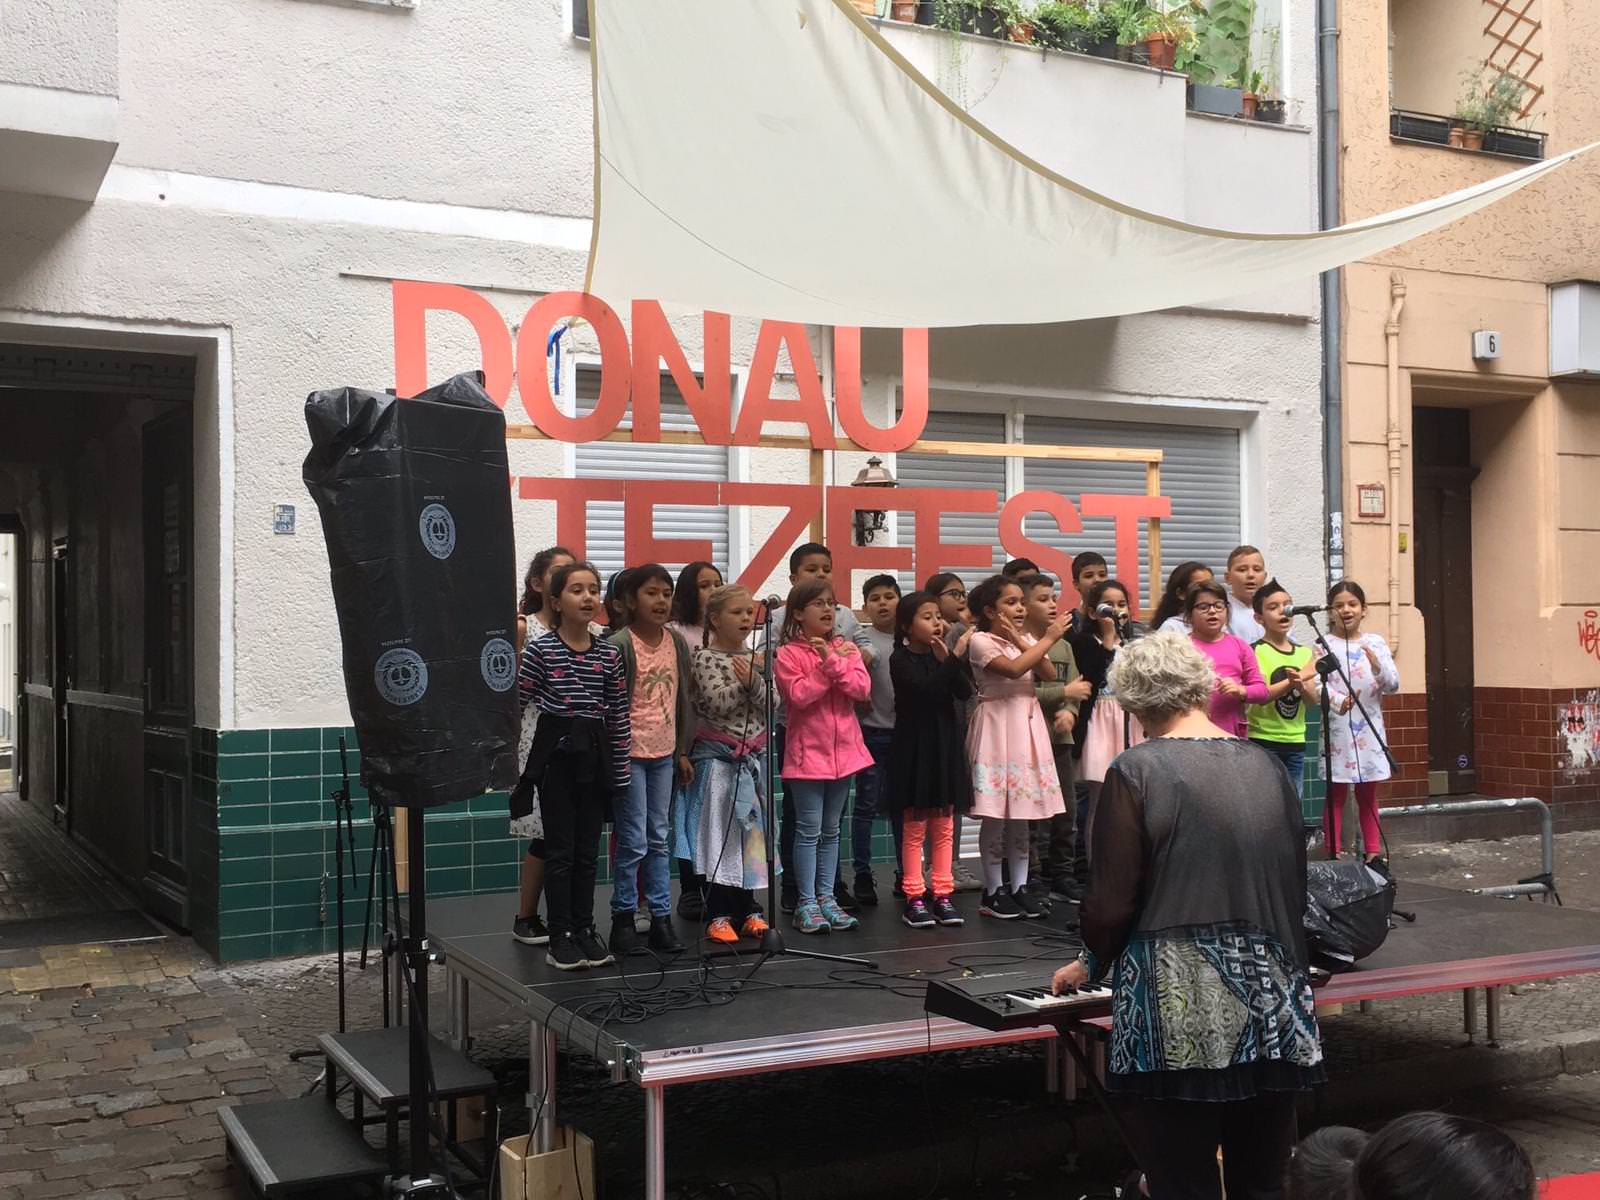 فرقة دارنا للتراث الفلسطيني تشارك في احتفال اليوم المفتوح في برلين برعاية كارين كورته